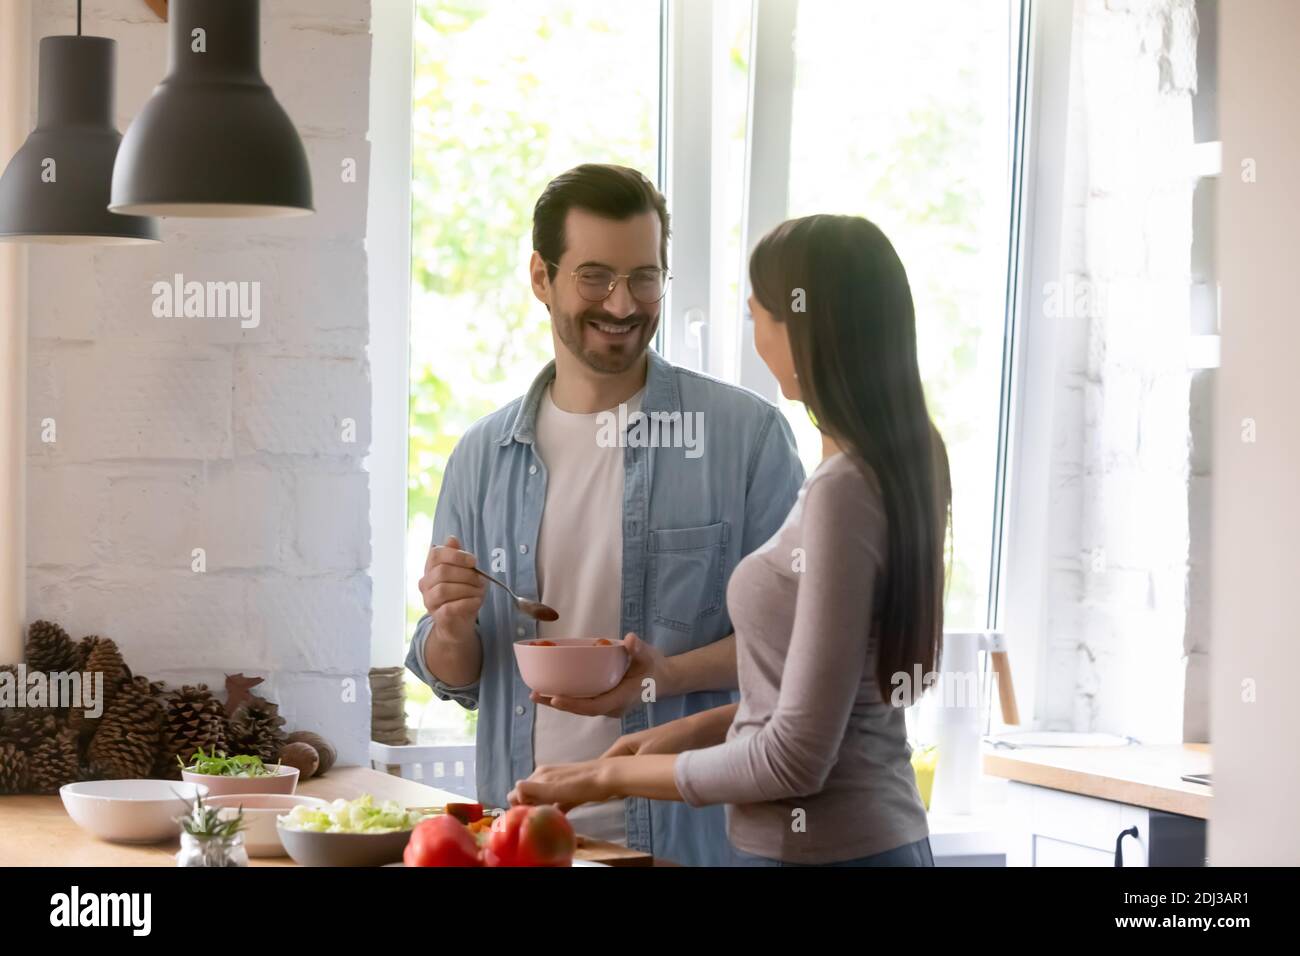 Un homme et une femme heureux qui apprécient les loisirs et qui cuisent la salade ensemble Banque D'Images